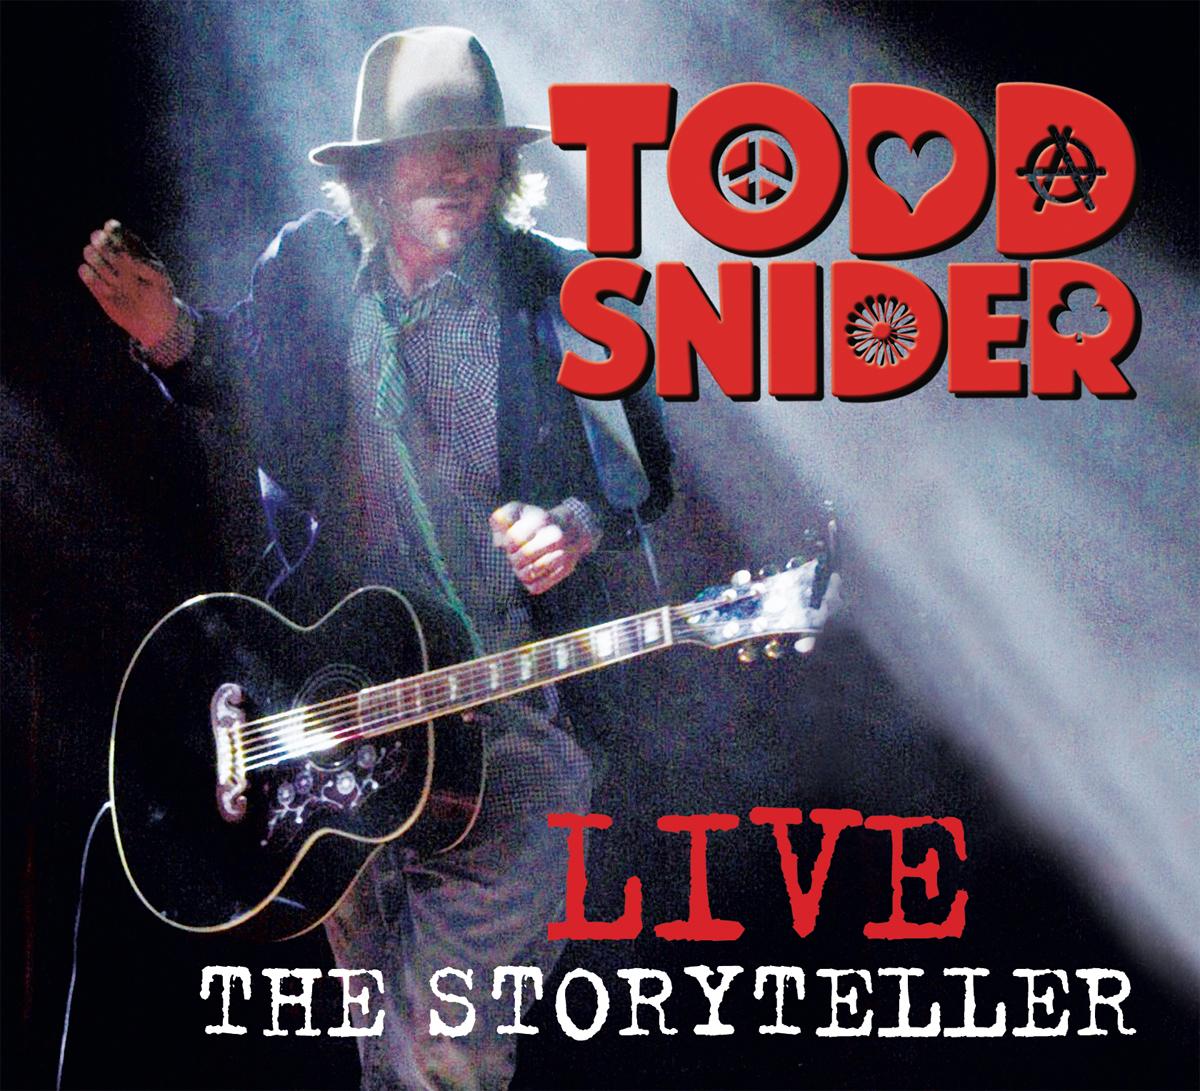 Todd Snider: The Storyteller